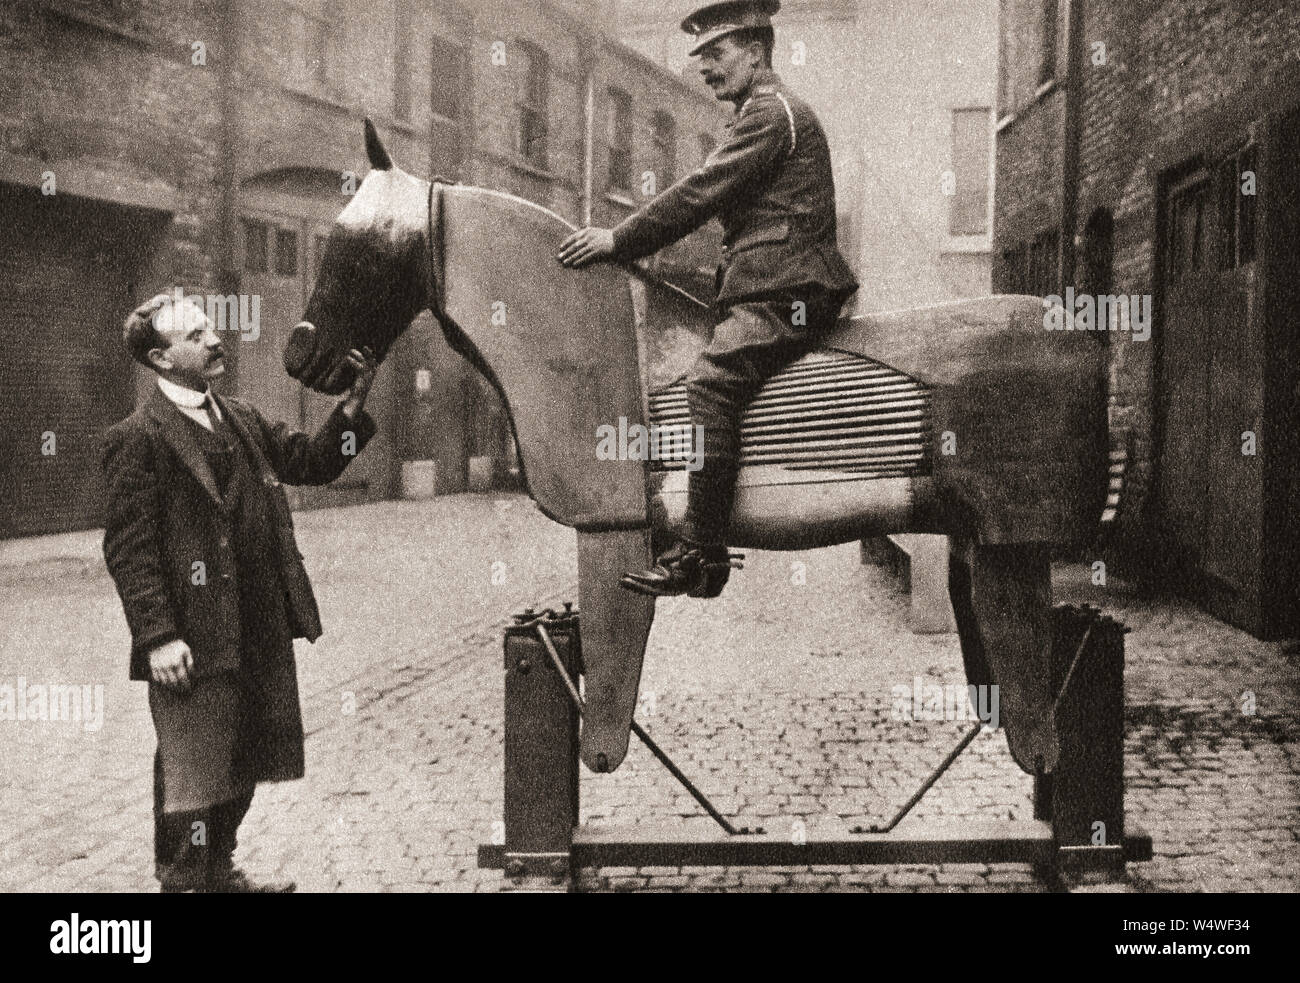 Matières premières formation recrute les rudiments de l'équitation sur des chevaux factices au début de la PREMIÈRE GUERRE MONDIALE en 1914. À partir de la cérémonie du siècle, publié en 1934. Banque D'Images